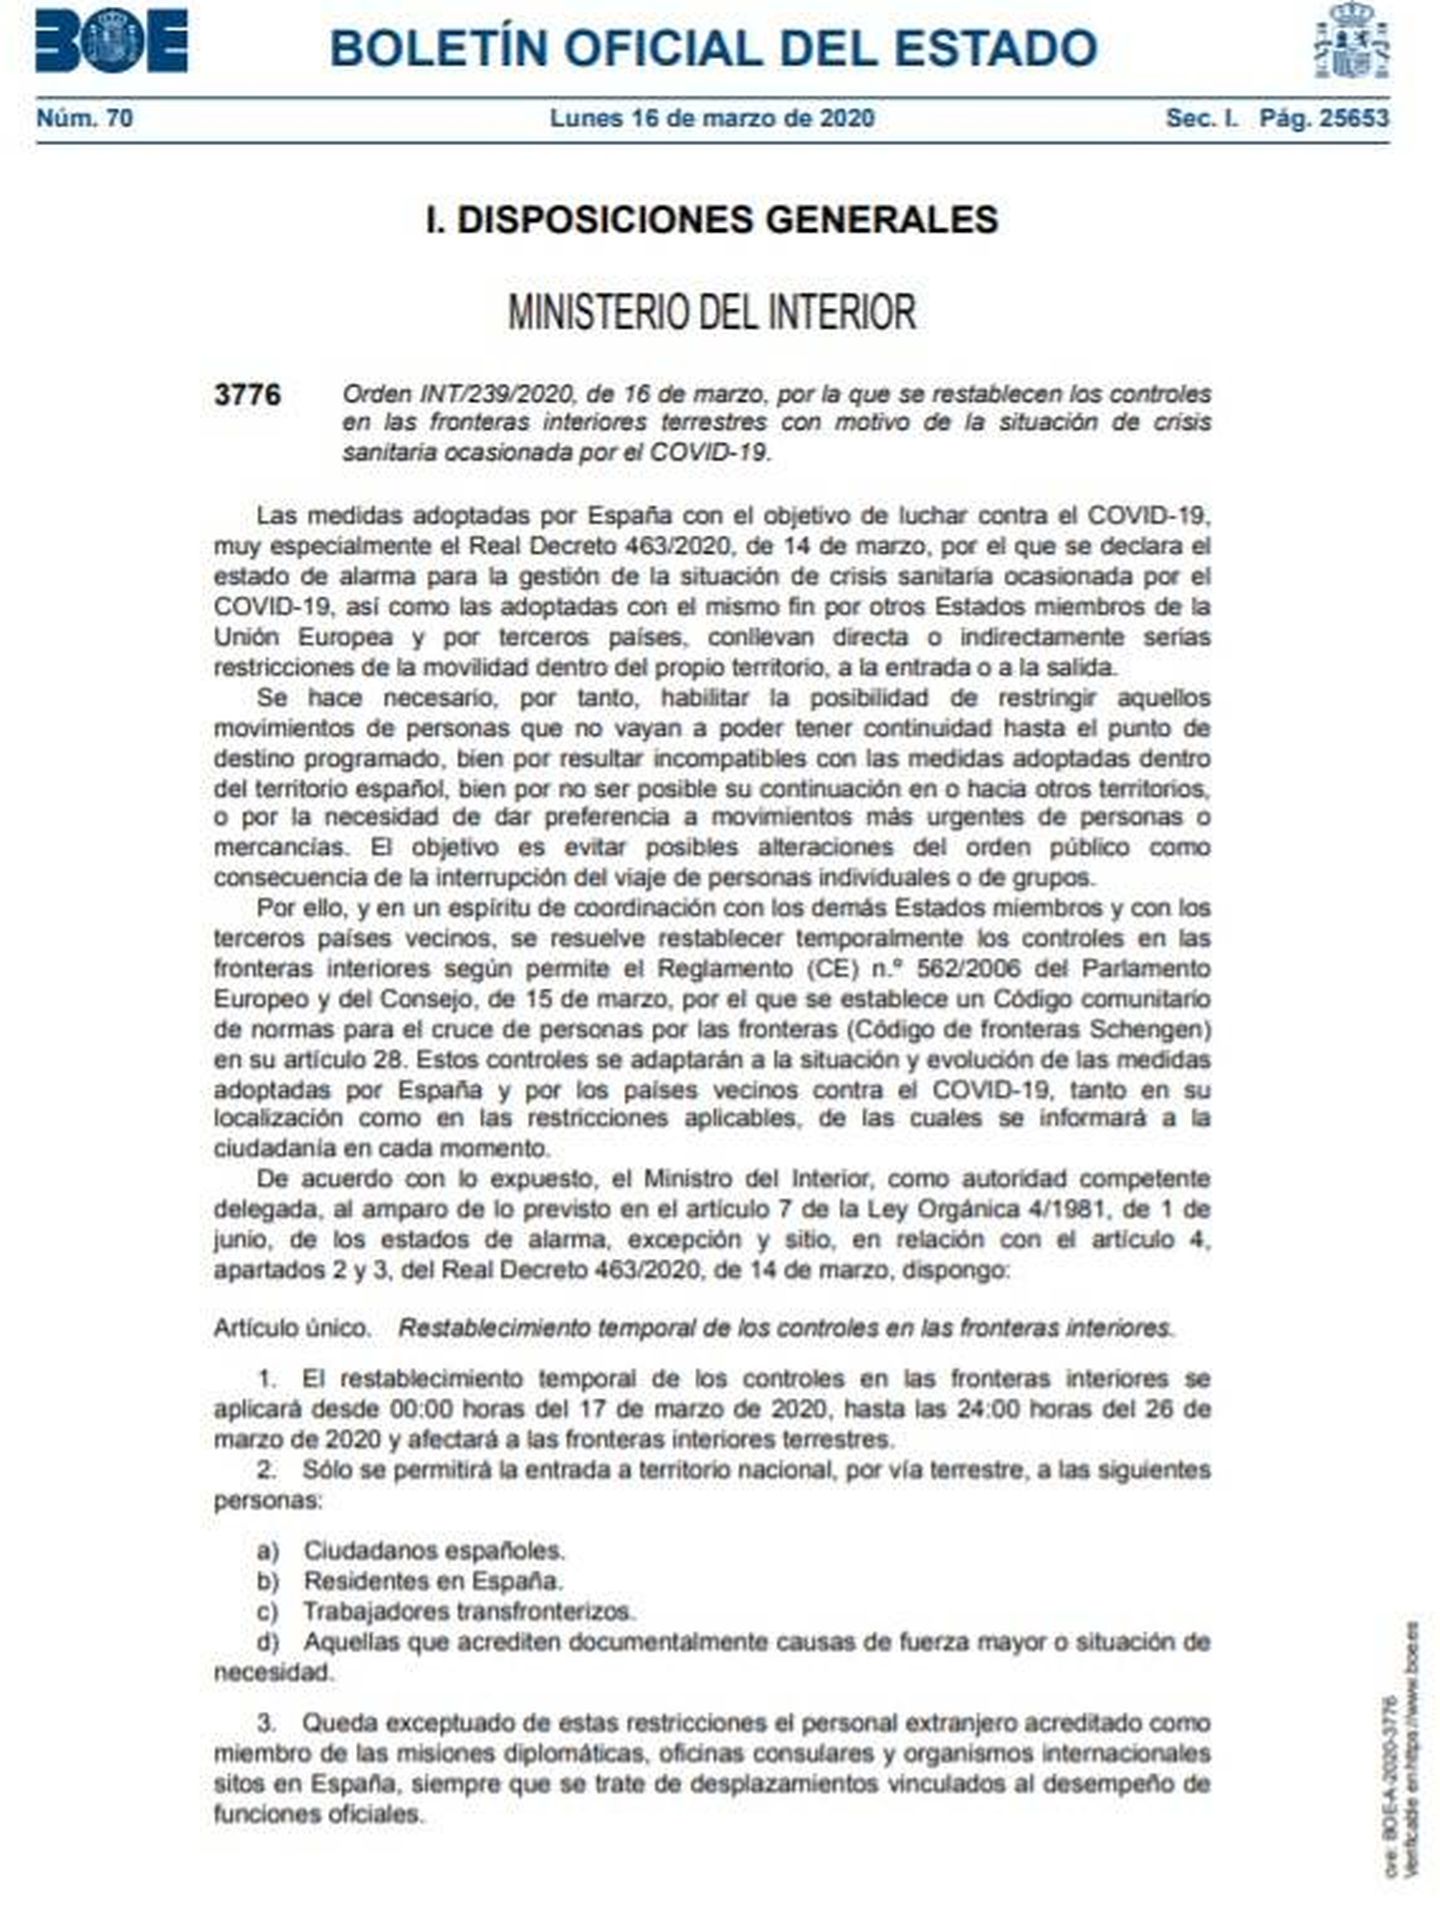 Consulte aquí el PDF de la orden de Interior de restablecimiento temporal de los controles de las fronteras interiores. 